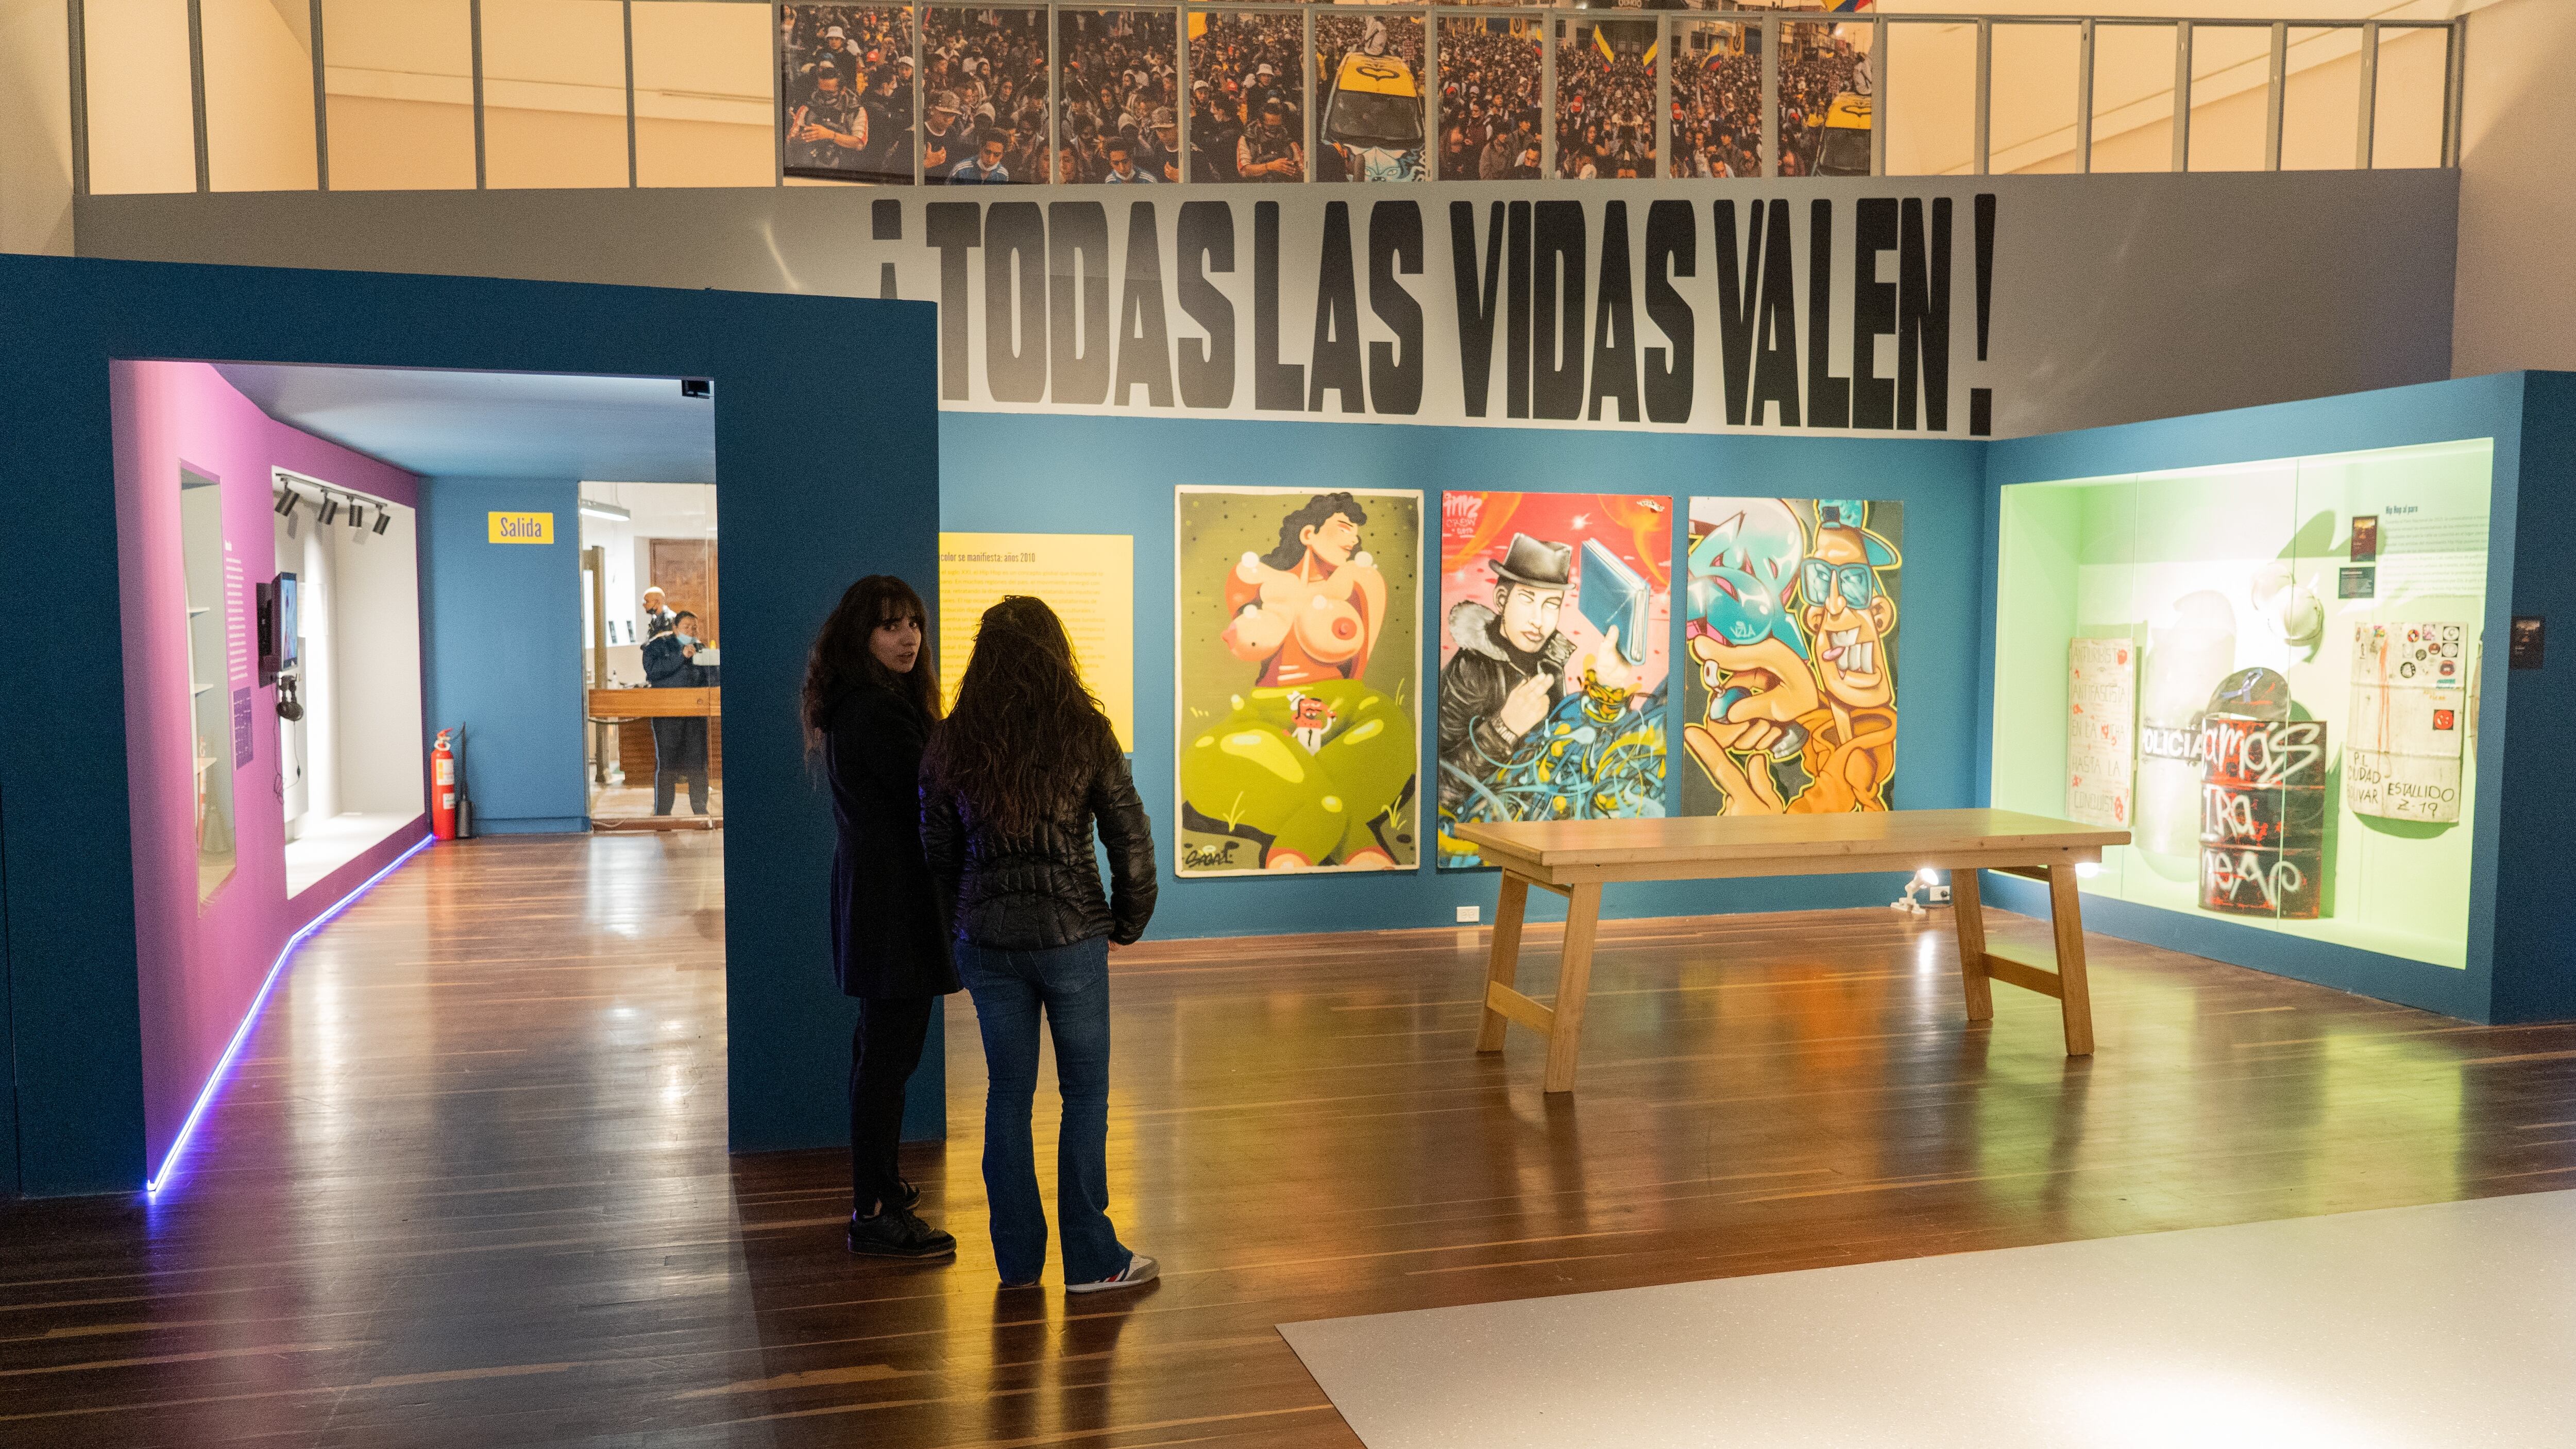 Nación Hip-Hop: Colombia al ritmo de una cultura, exposición sobre la cultura Hip-Hop, en el Museo Nacional, en Bogotá, el 15 de diciembre de 2022.